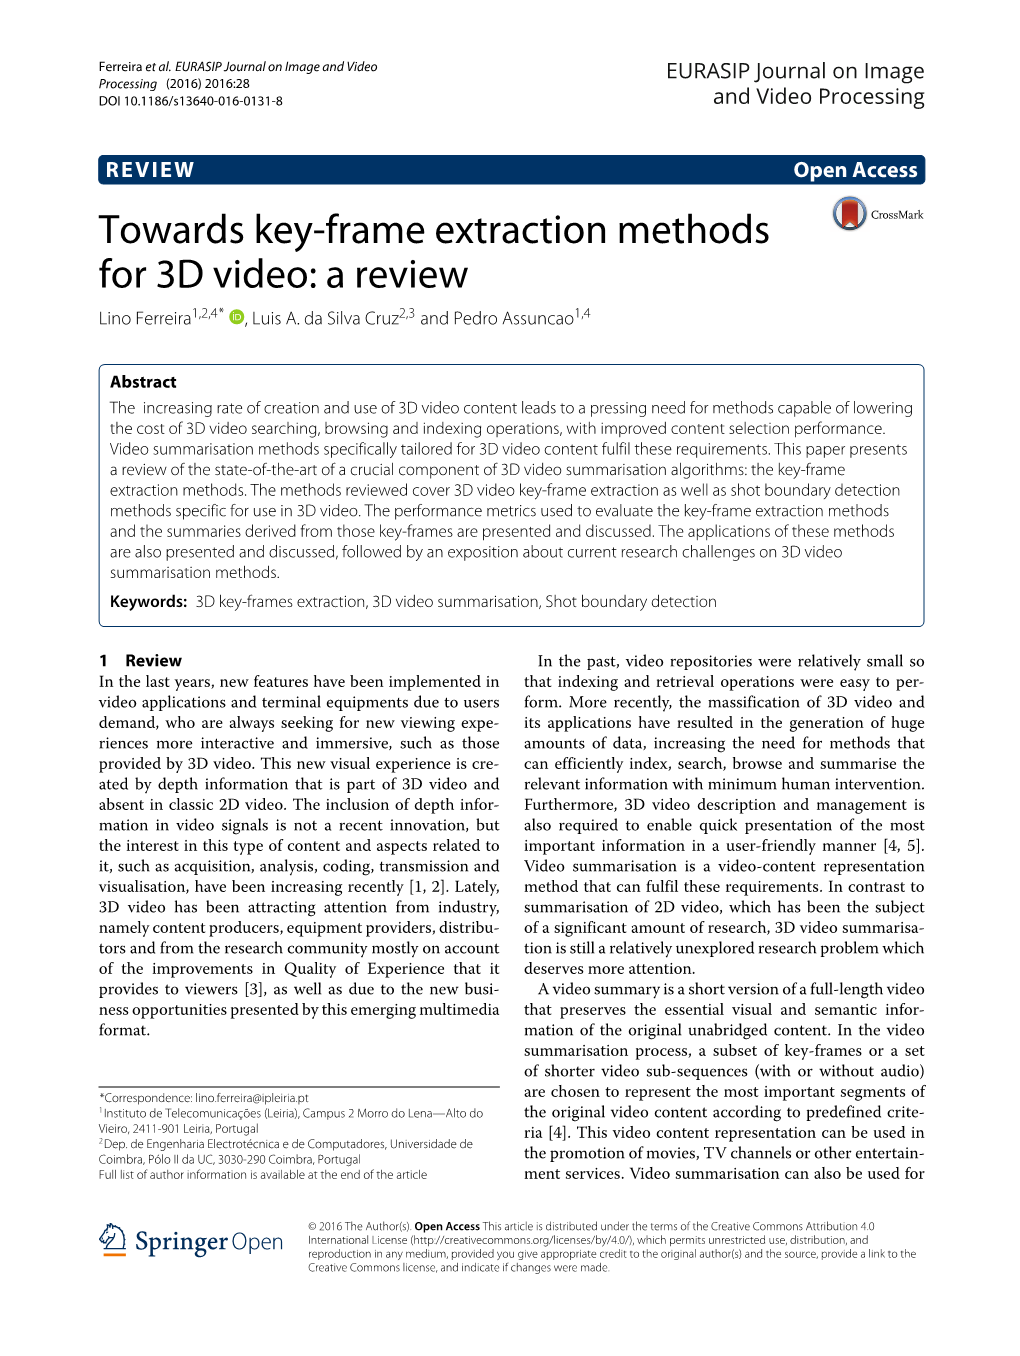 Towards Key-Frame Extraction Methods for 3D Video: a Review Lino Ferreira1,2,4* ,Luisa.Dasilvacruz2,3 and Pedro Assuncao1,4